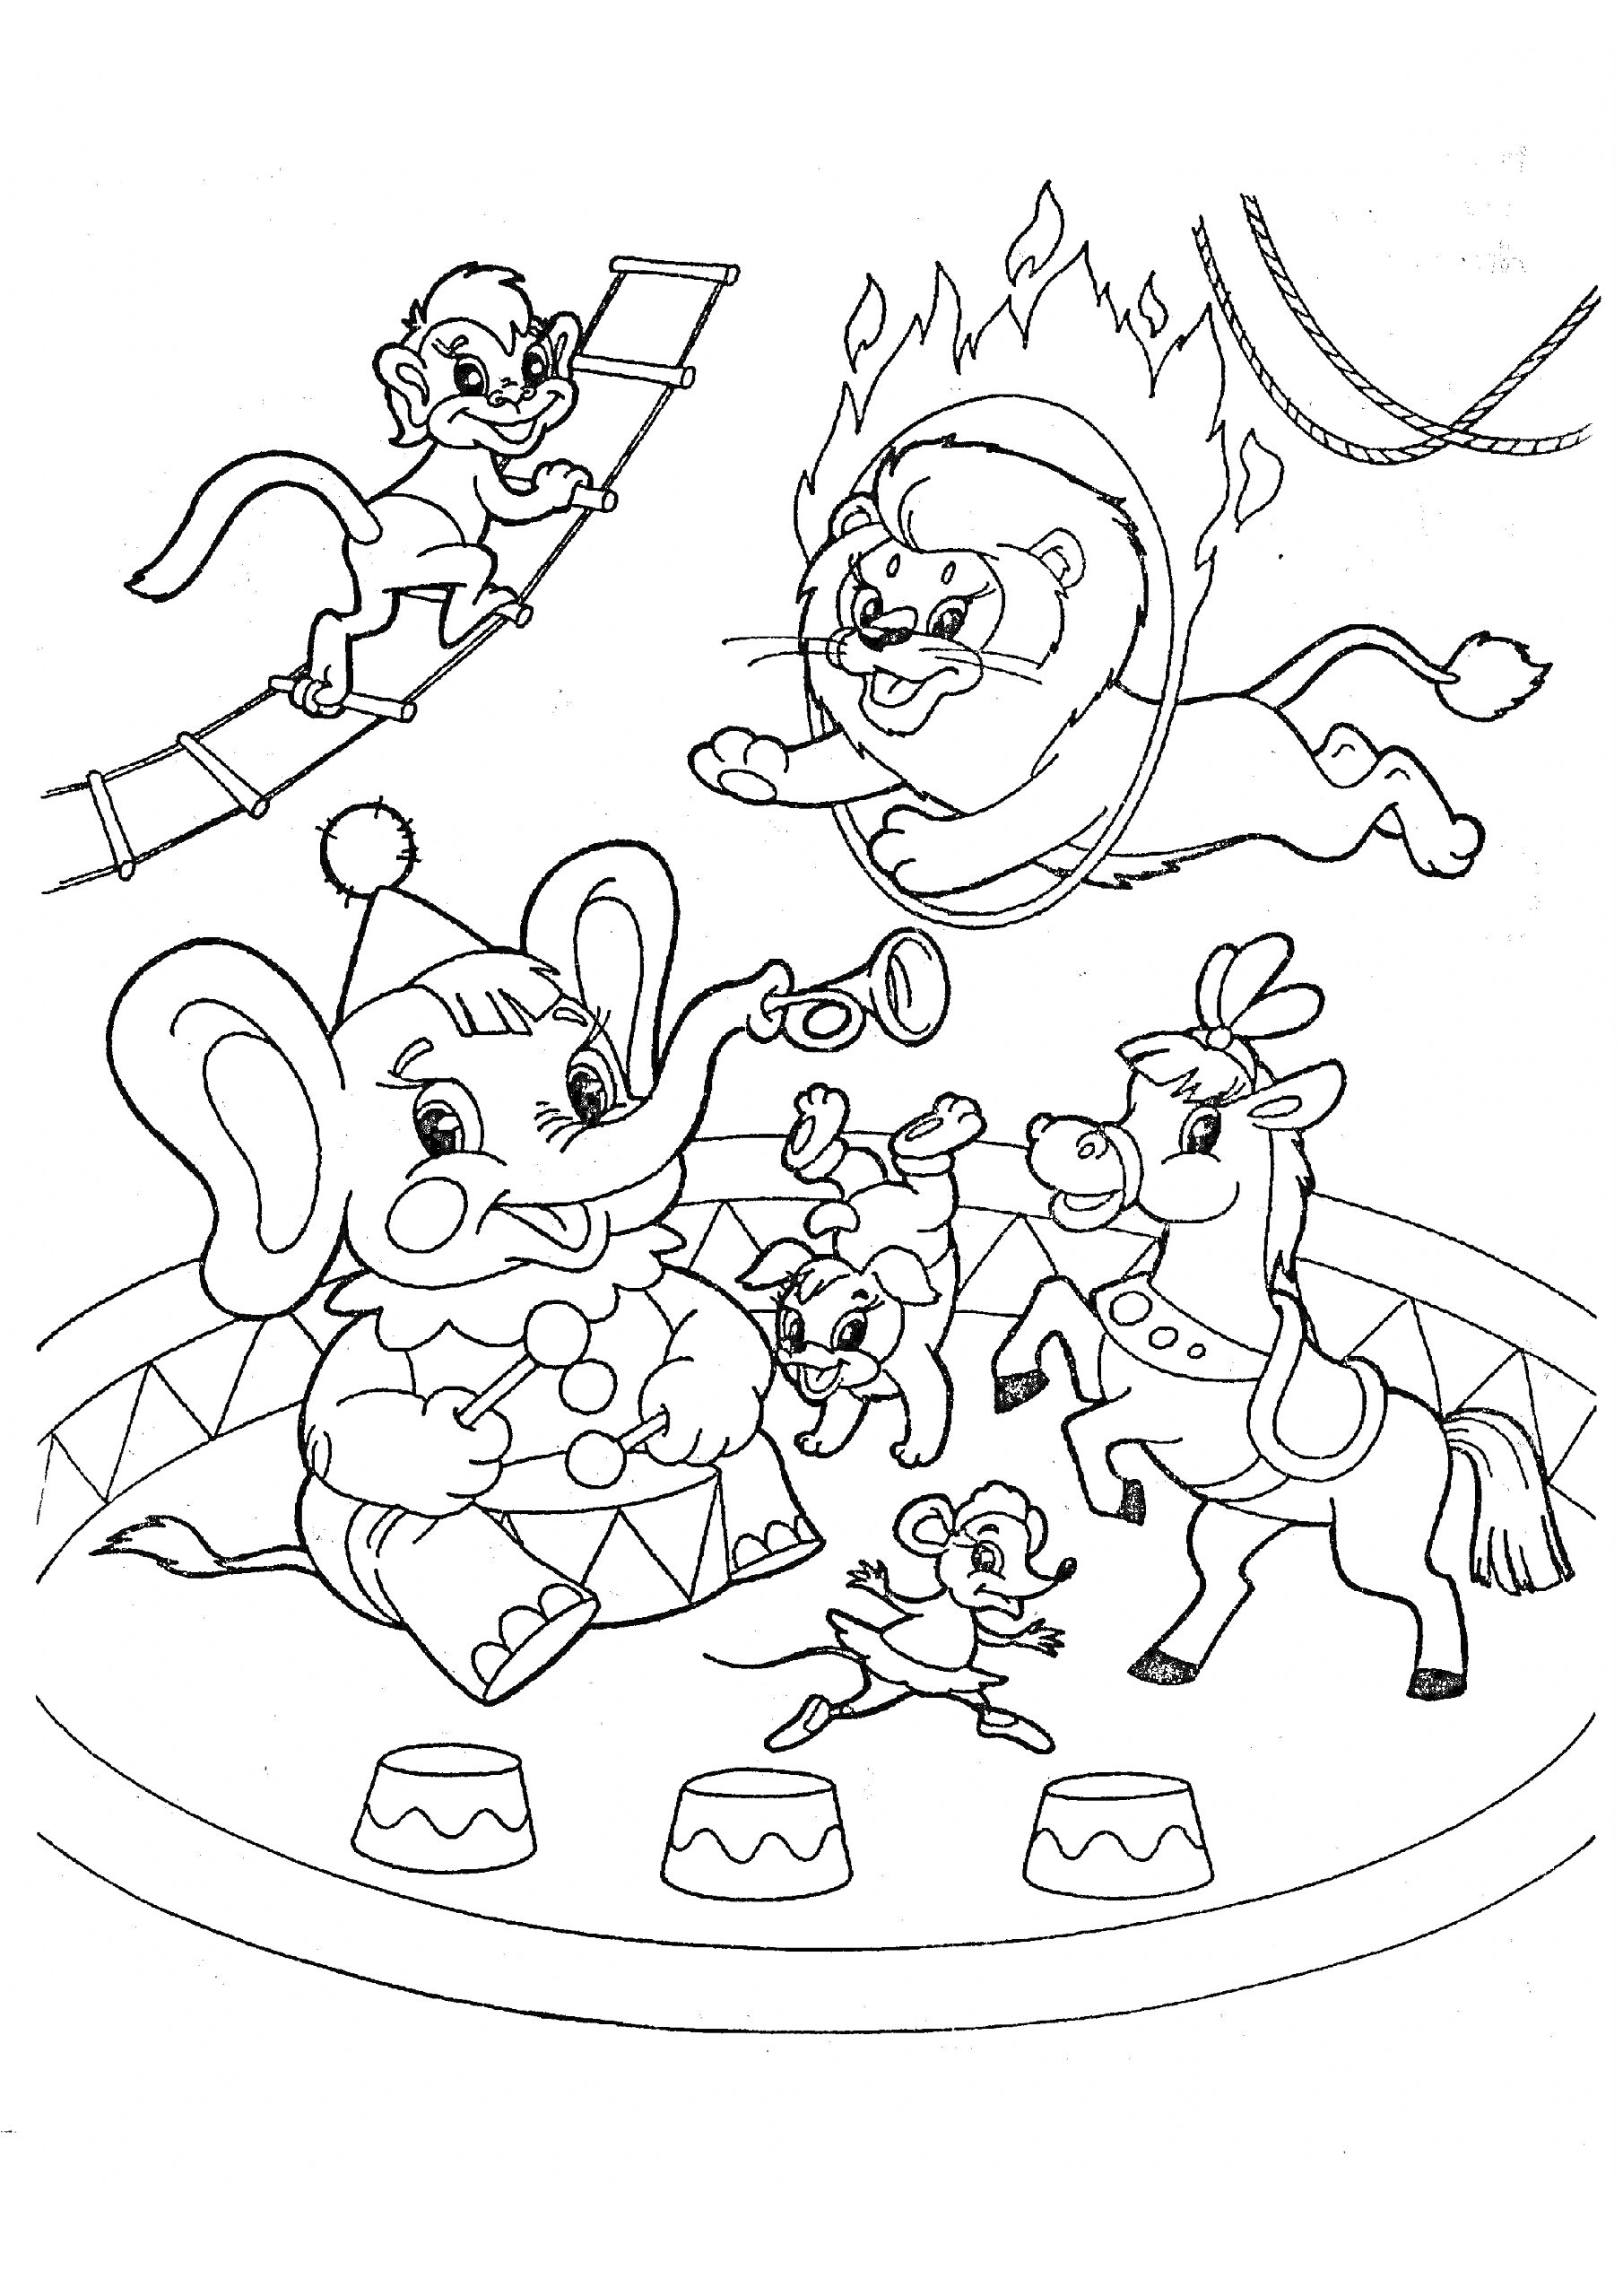 Раскраска Цирк с животными на аренде: слон-клоун с трубой, лев прыгающий через огненное кольцо, обезьяна на канате, цирковая лошадь, танцующие мыши